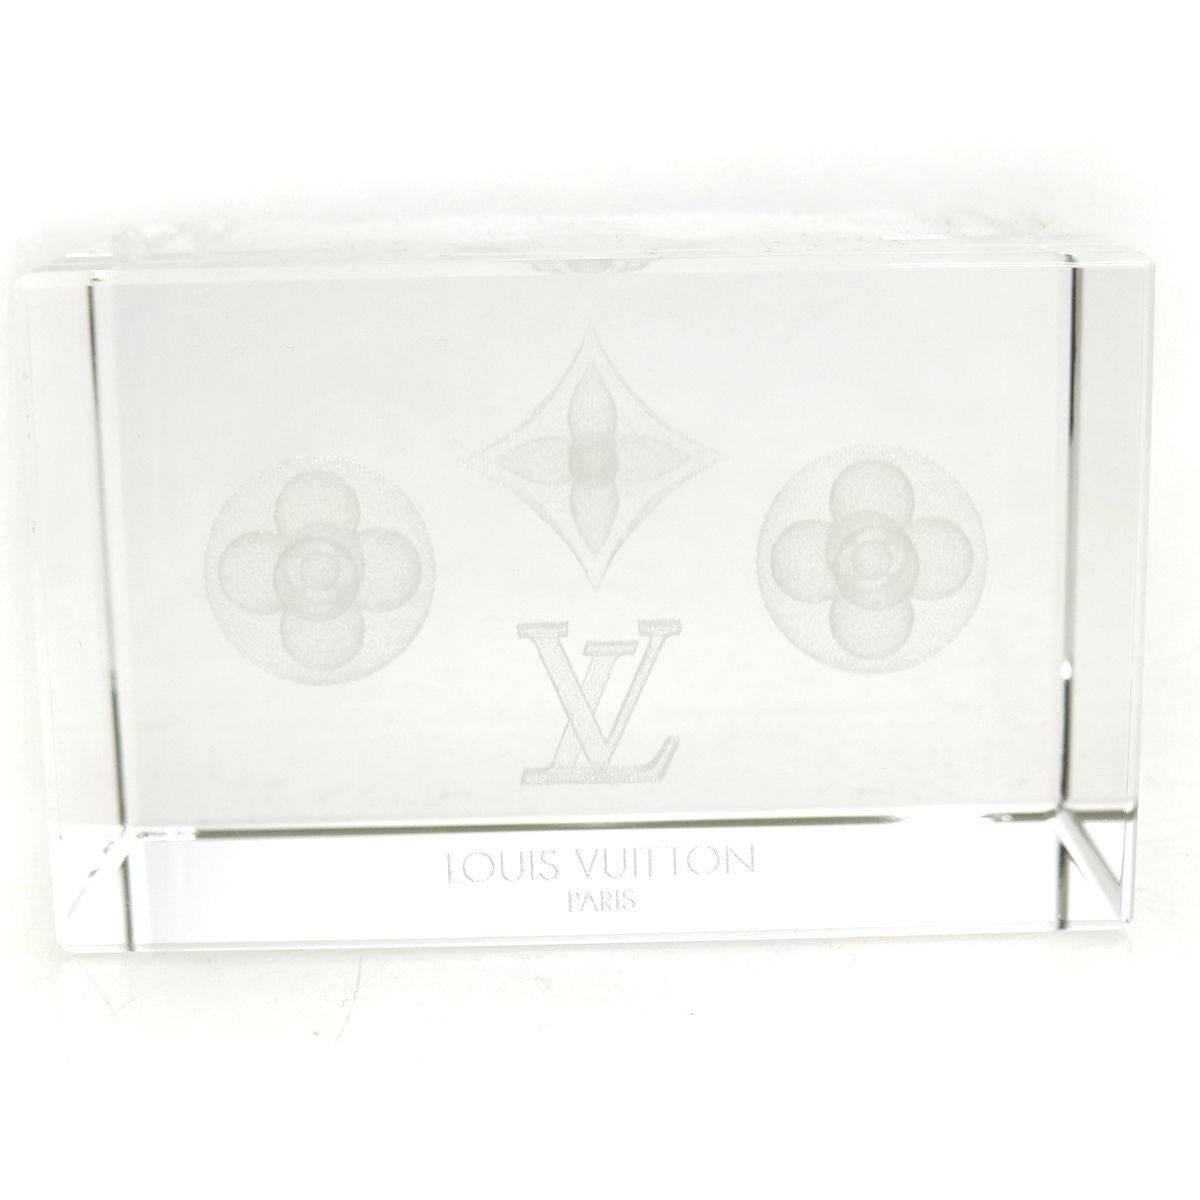 NEU! Louis Vuitton Monogram Crystal Cube Schreibtisch Tisch dekorative Briefbeschwerer in Box

Dieses schwere und solide Möbelstück ist der ideale Akzent für jedes Arbeitszimmer, DEN, Büro oder jeden Couchtisch.

Kristall
Hergestellt in Frankreich